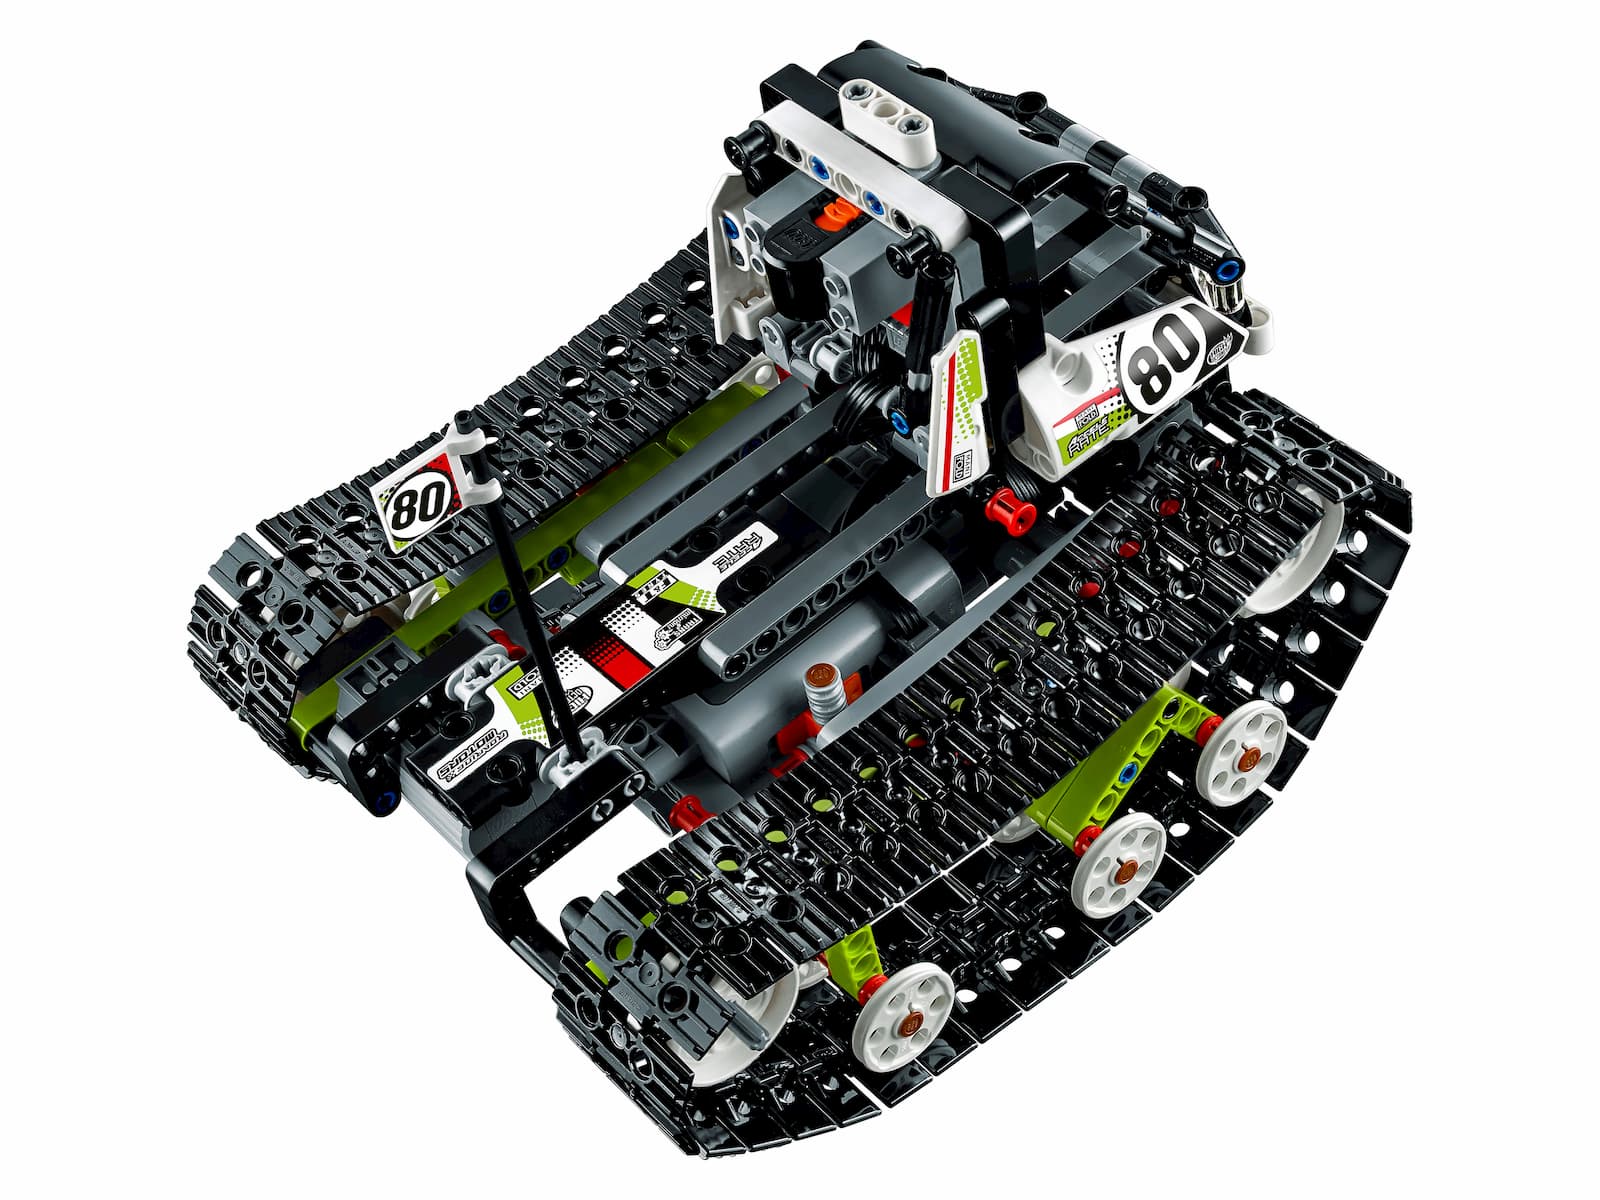 Конструктор LEGO Technic «Скоростной вездеход» 42065, 370 деталей